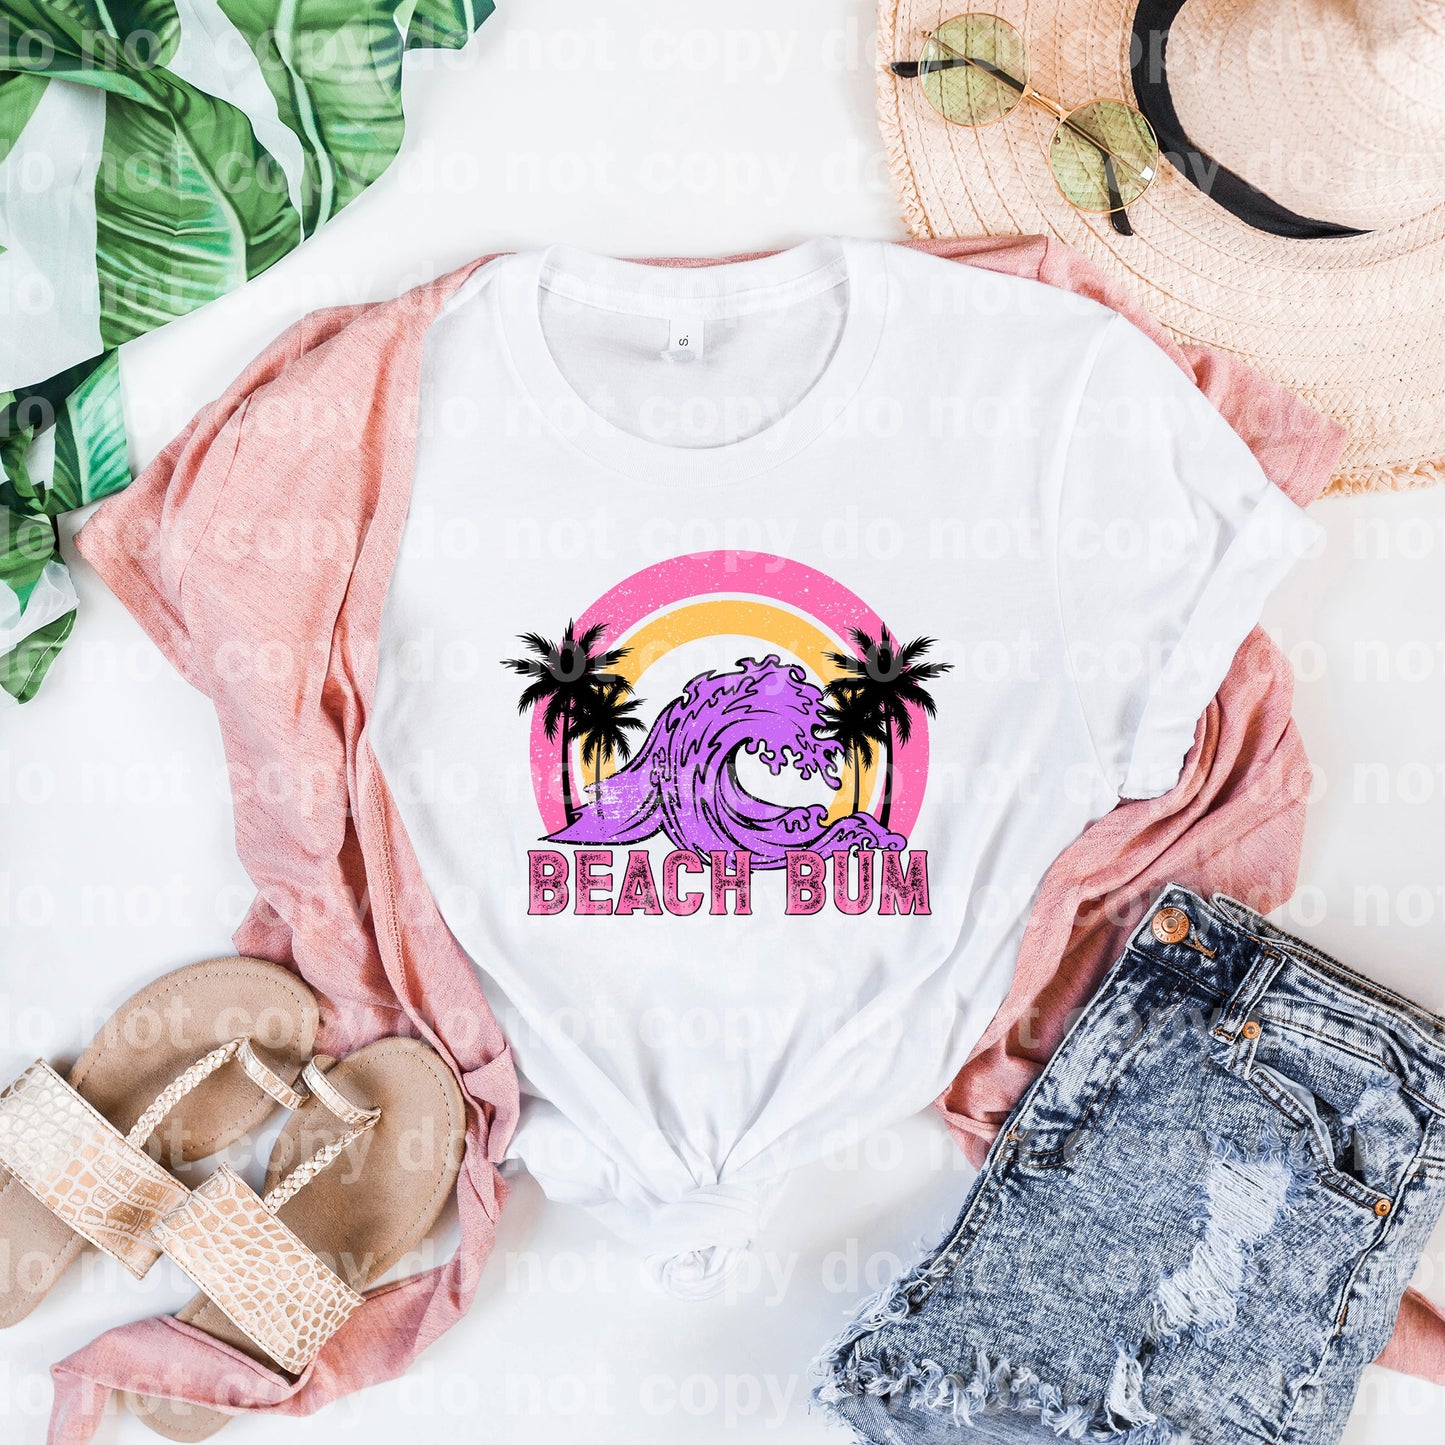 Beach Bum Dream Print or Sublimation Print